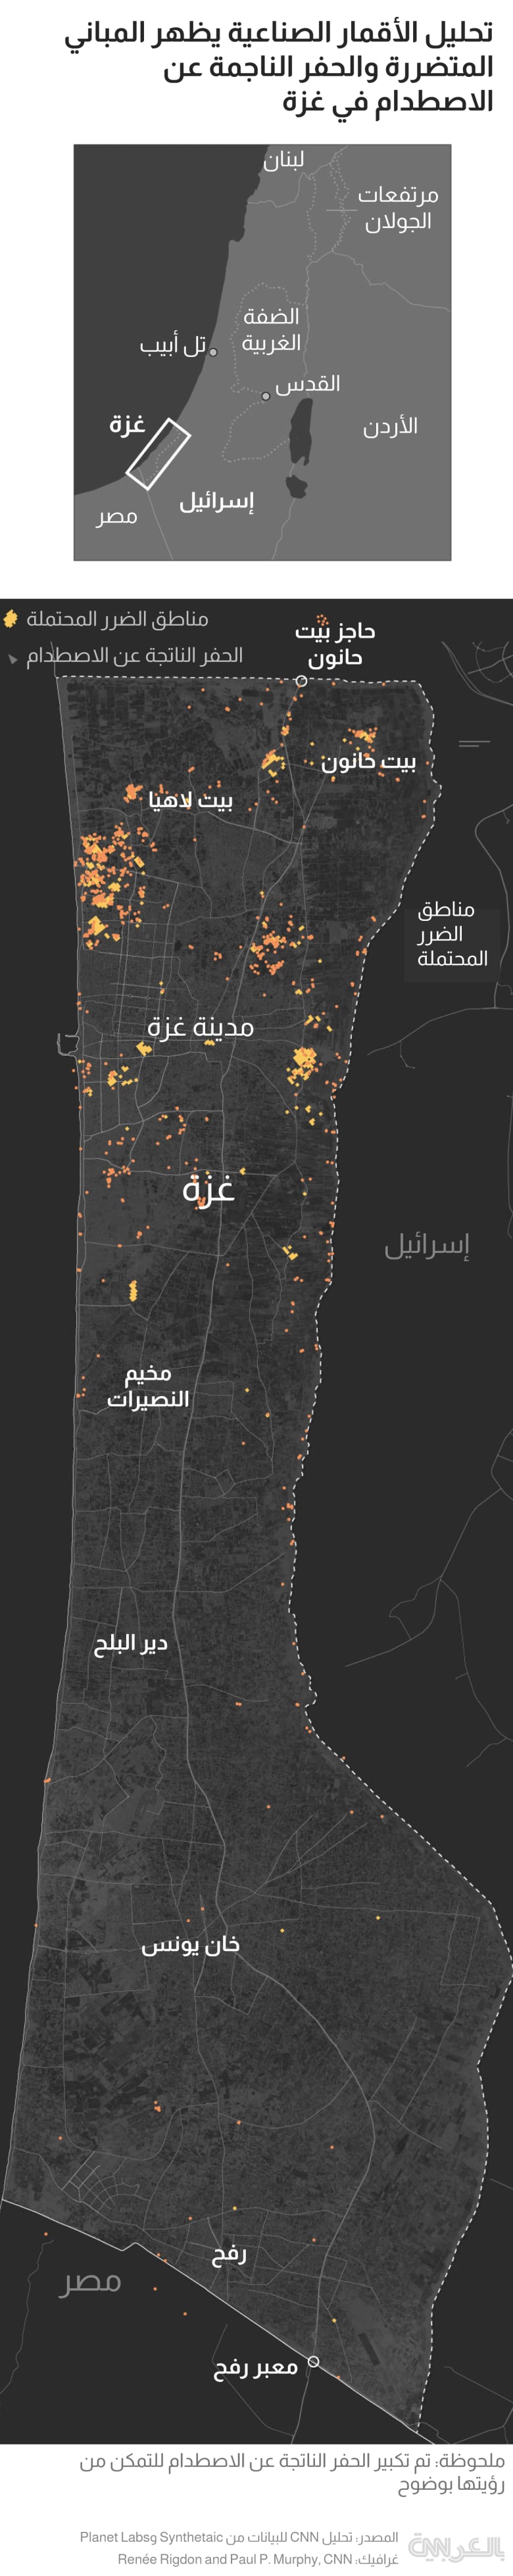 Gaza destruction update 281023